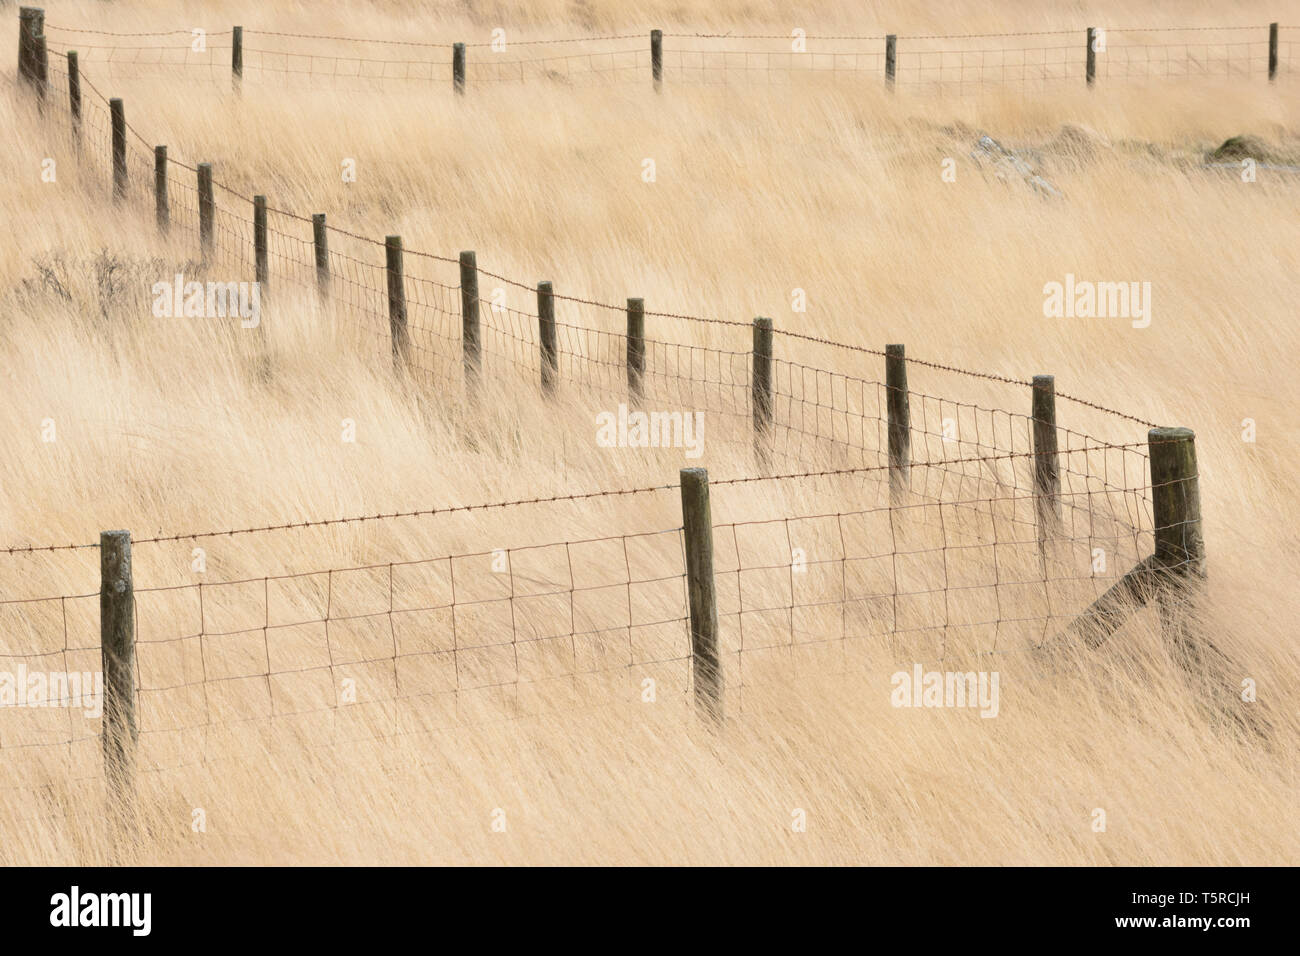 Les poteaux de clôture en "Z", entouré d'herbes pâles près de Penwyllt dans les Brecon Beacons, le Pays de Galles. Banque D'Images